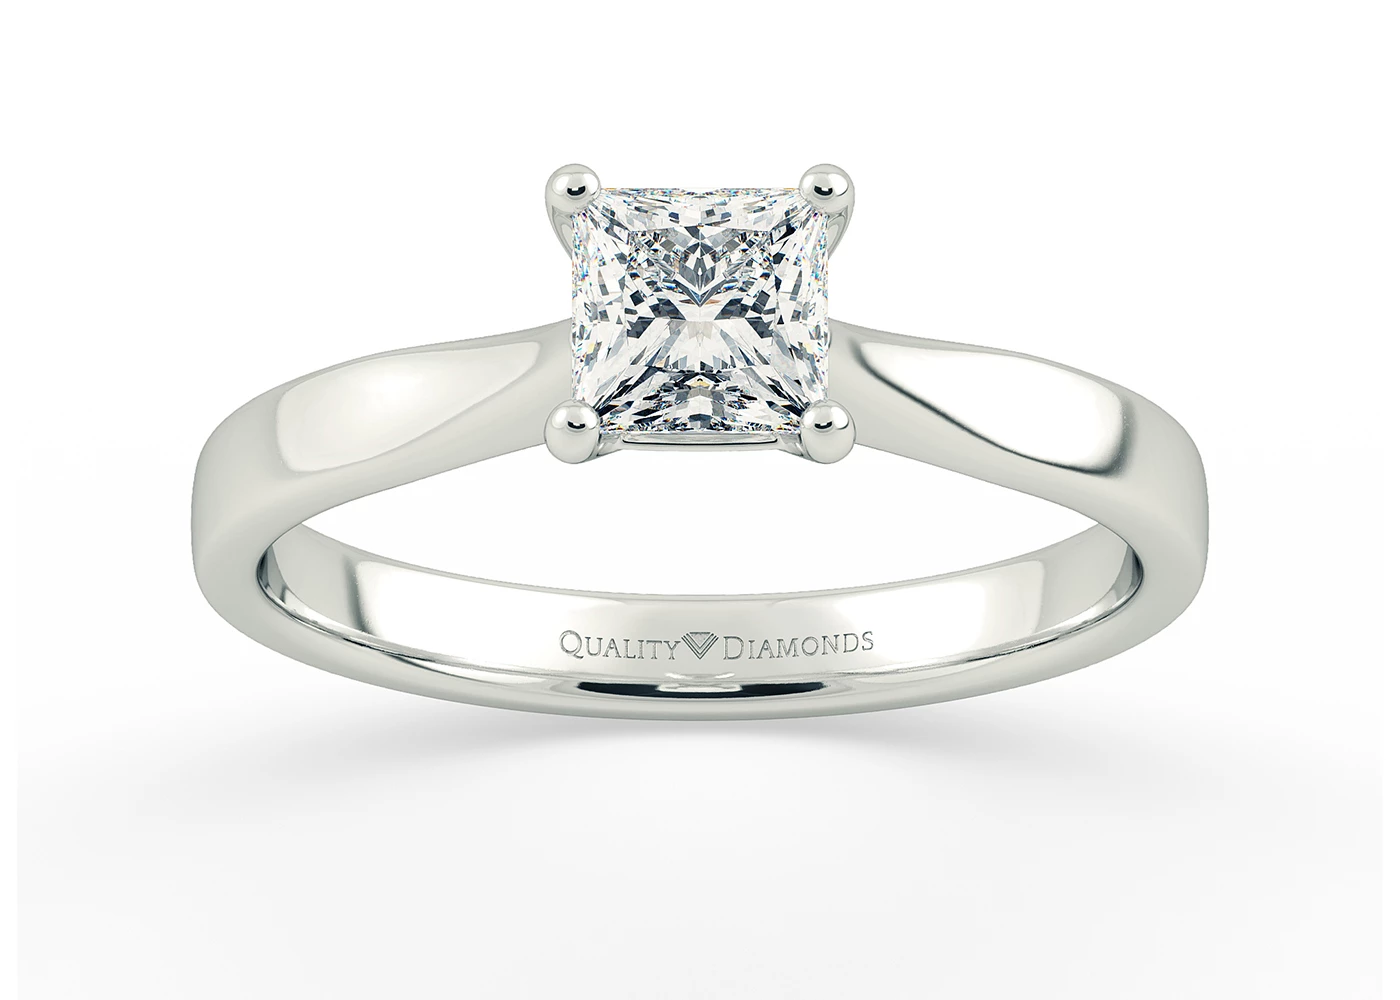 Princess Beau Diamond Ring in Platinum